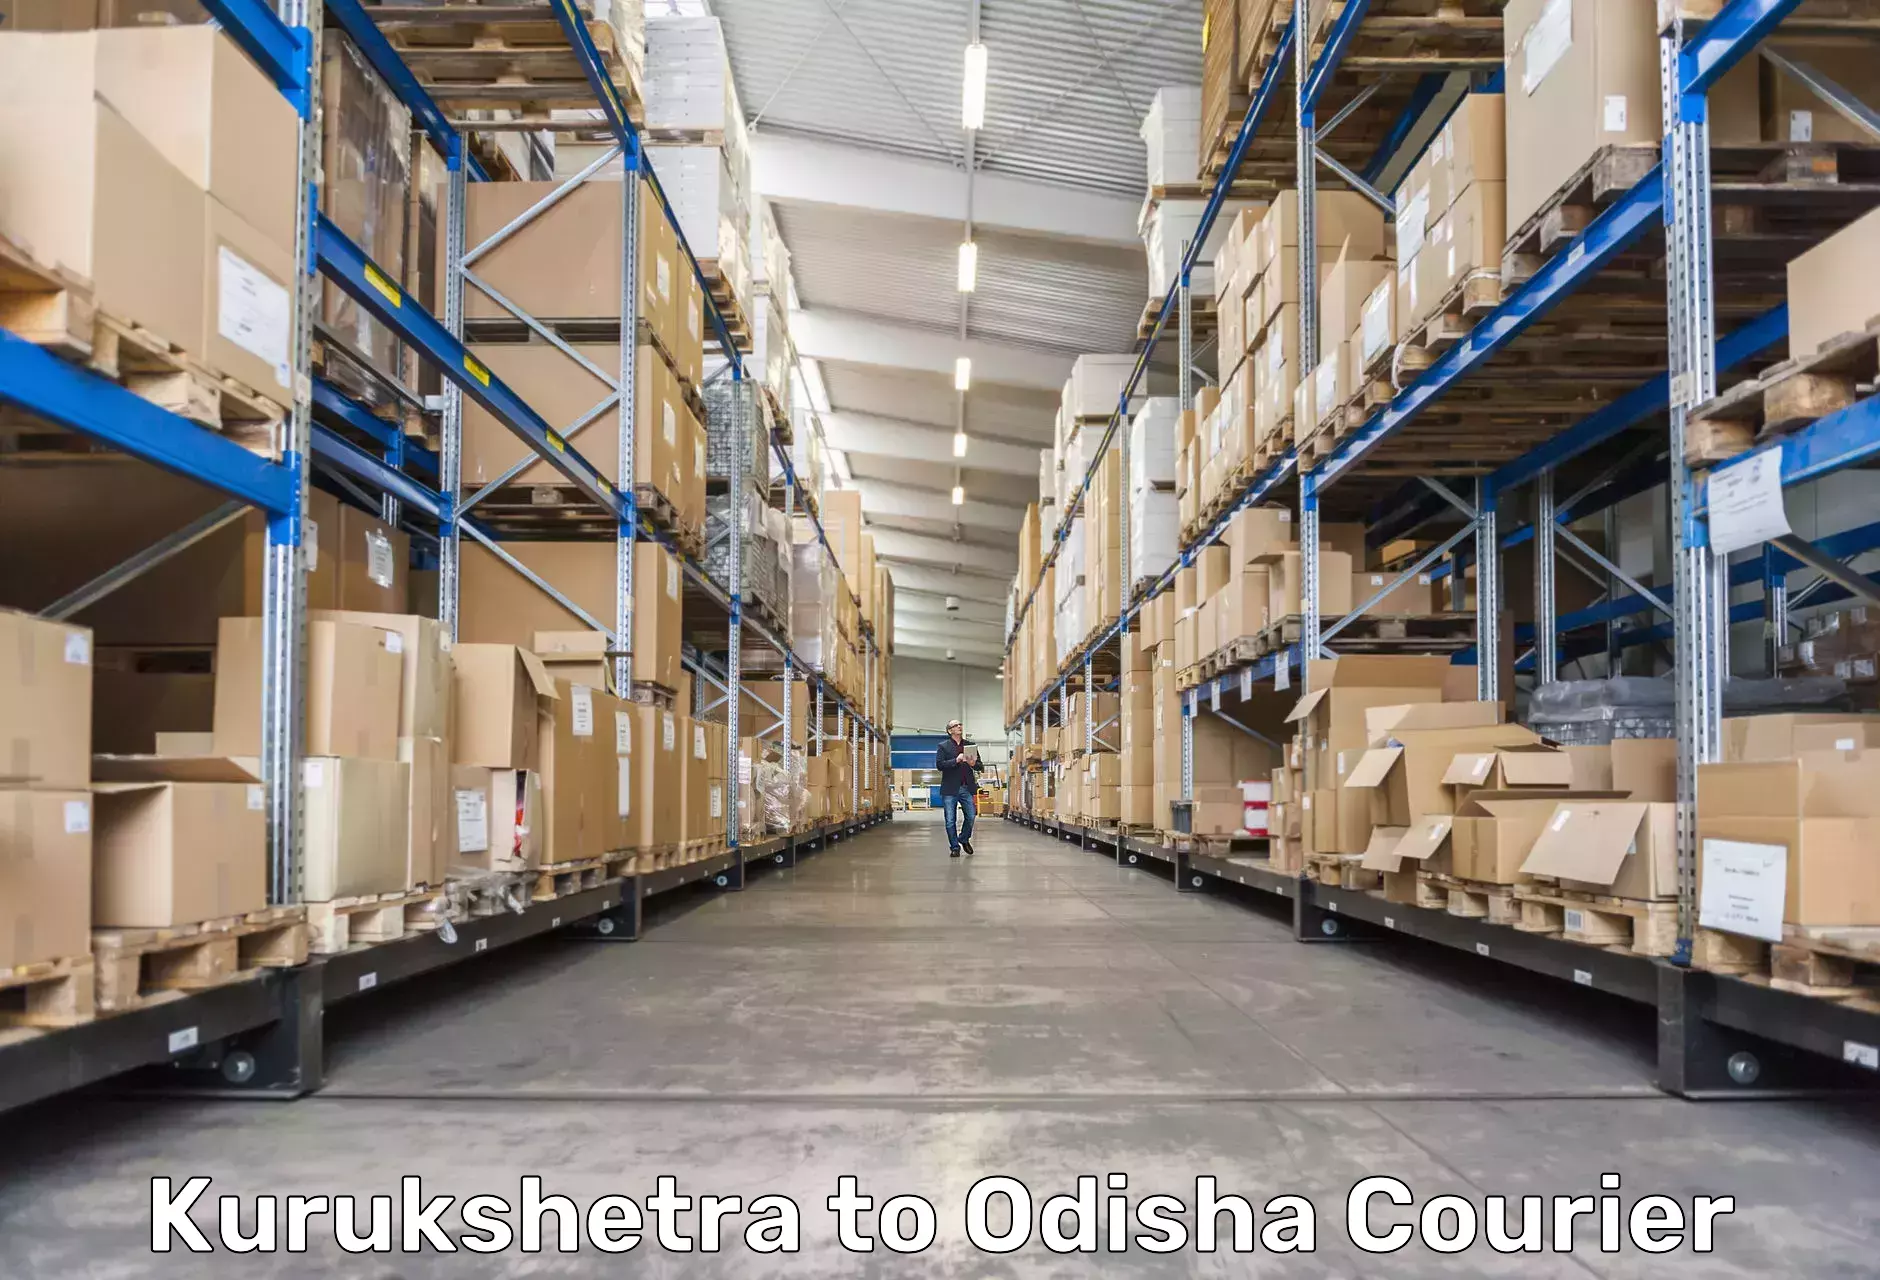 Reliable courier services in Kurukshetra to Saintala